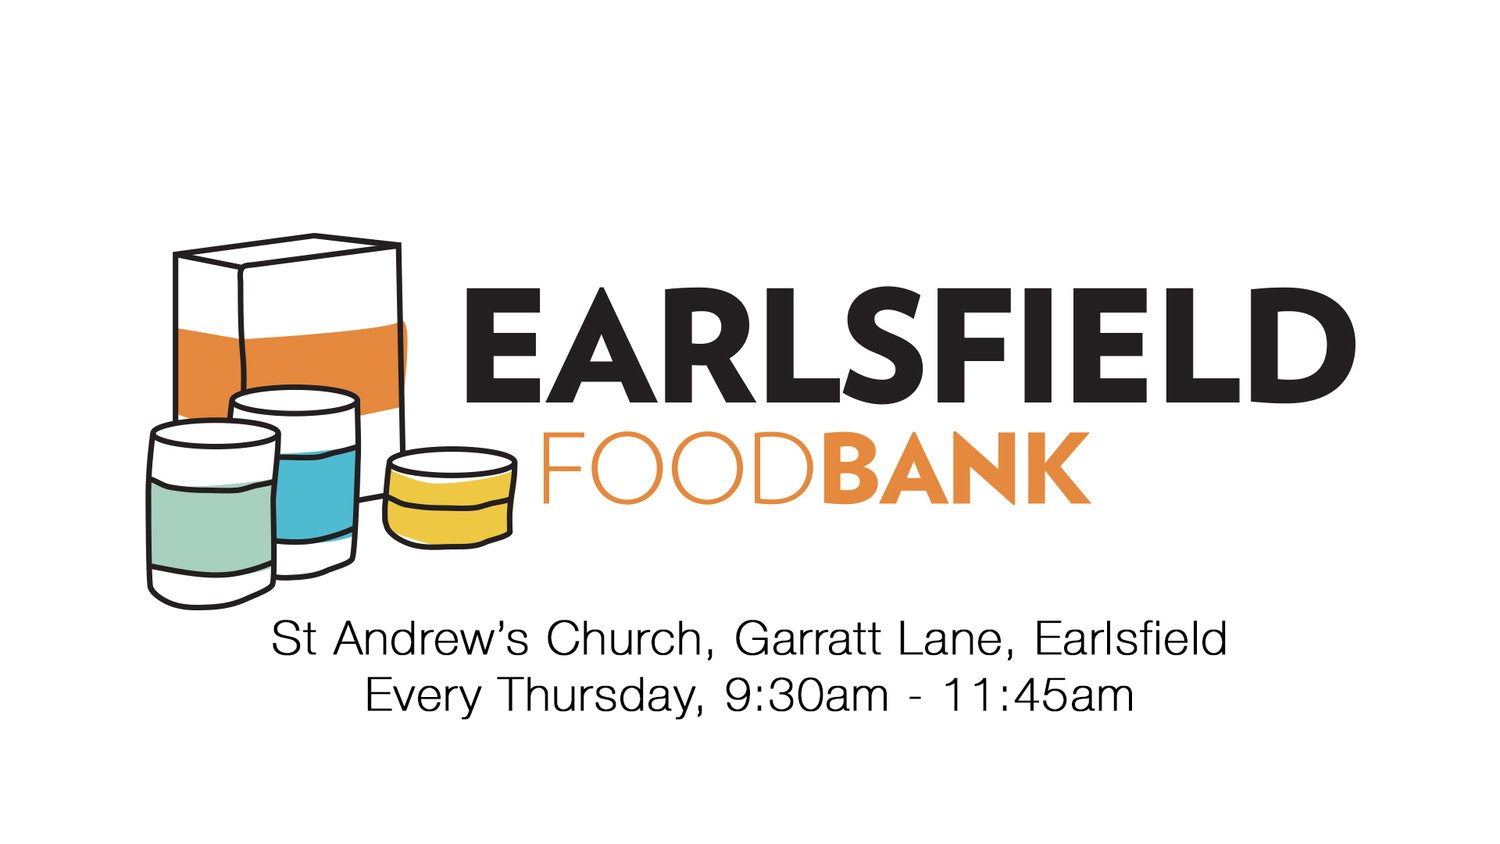 Earlsfield Foodbank